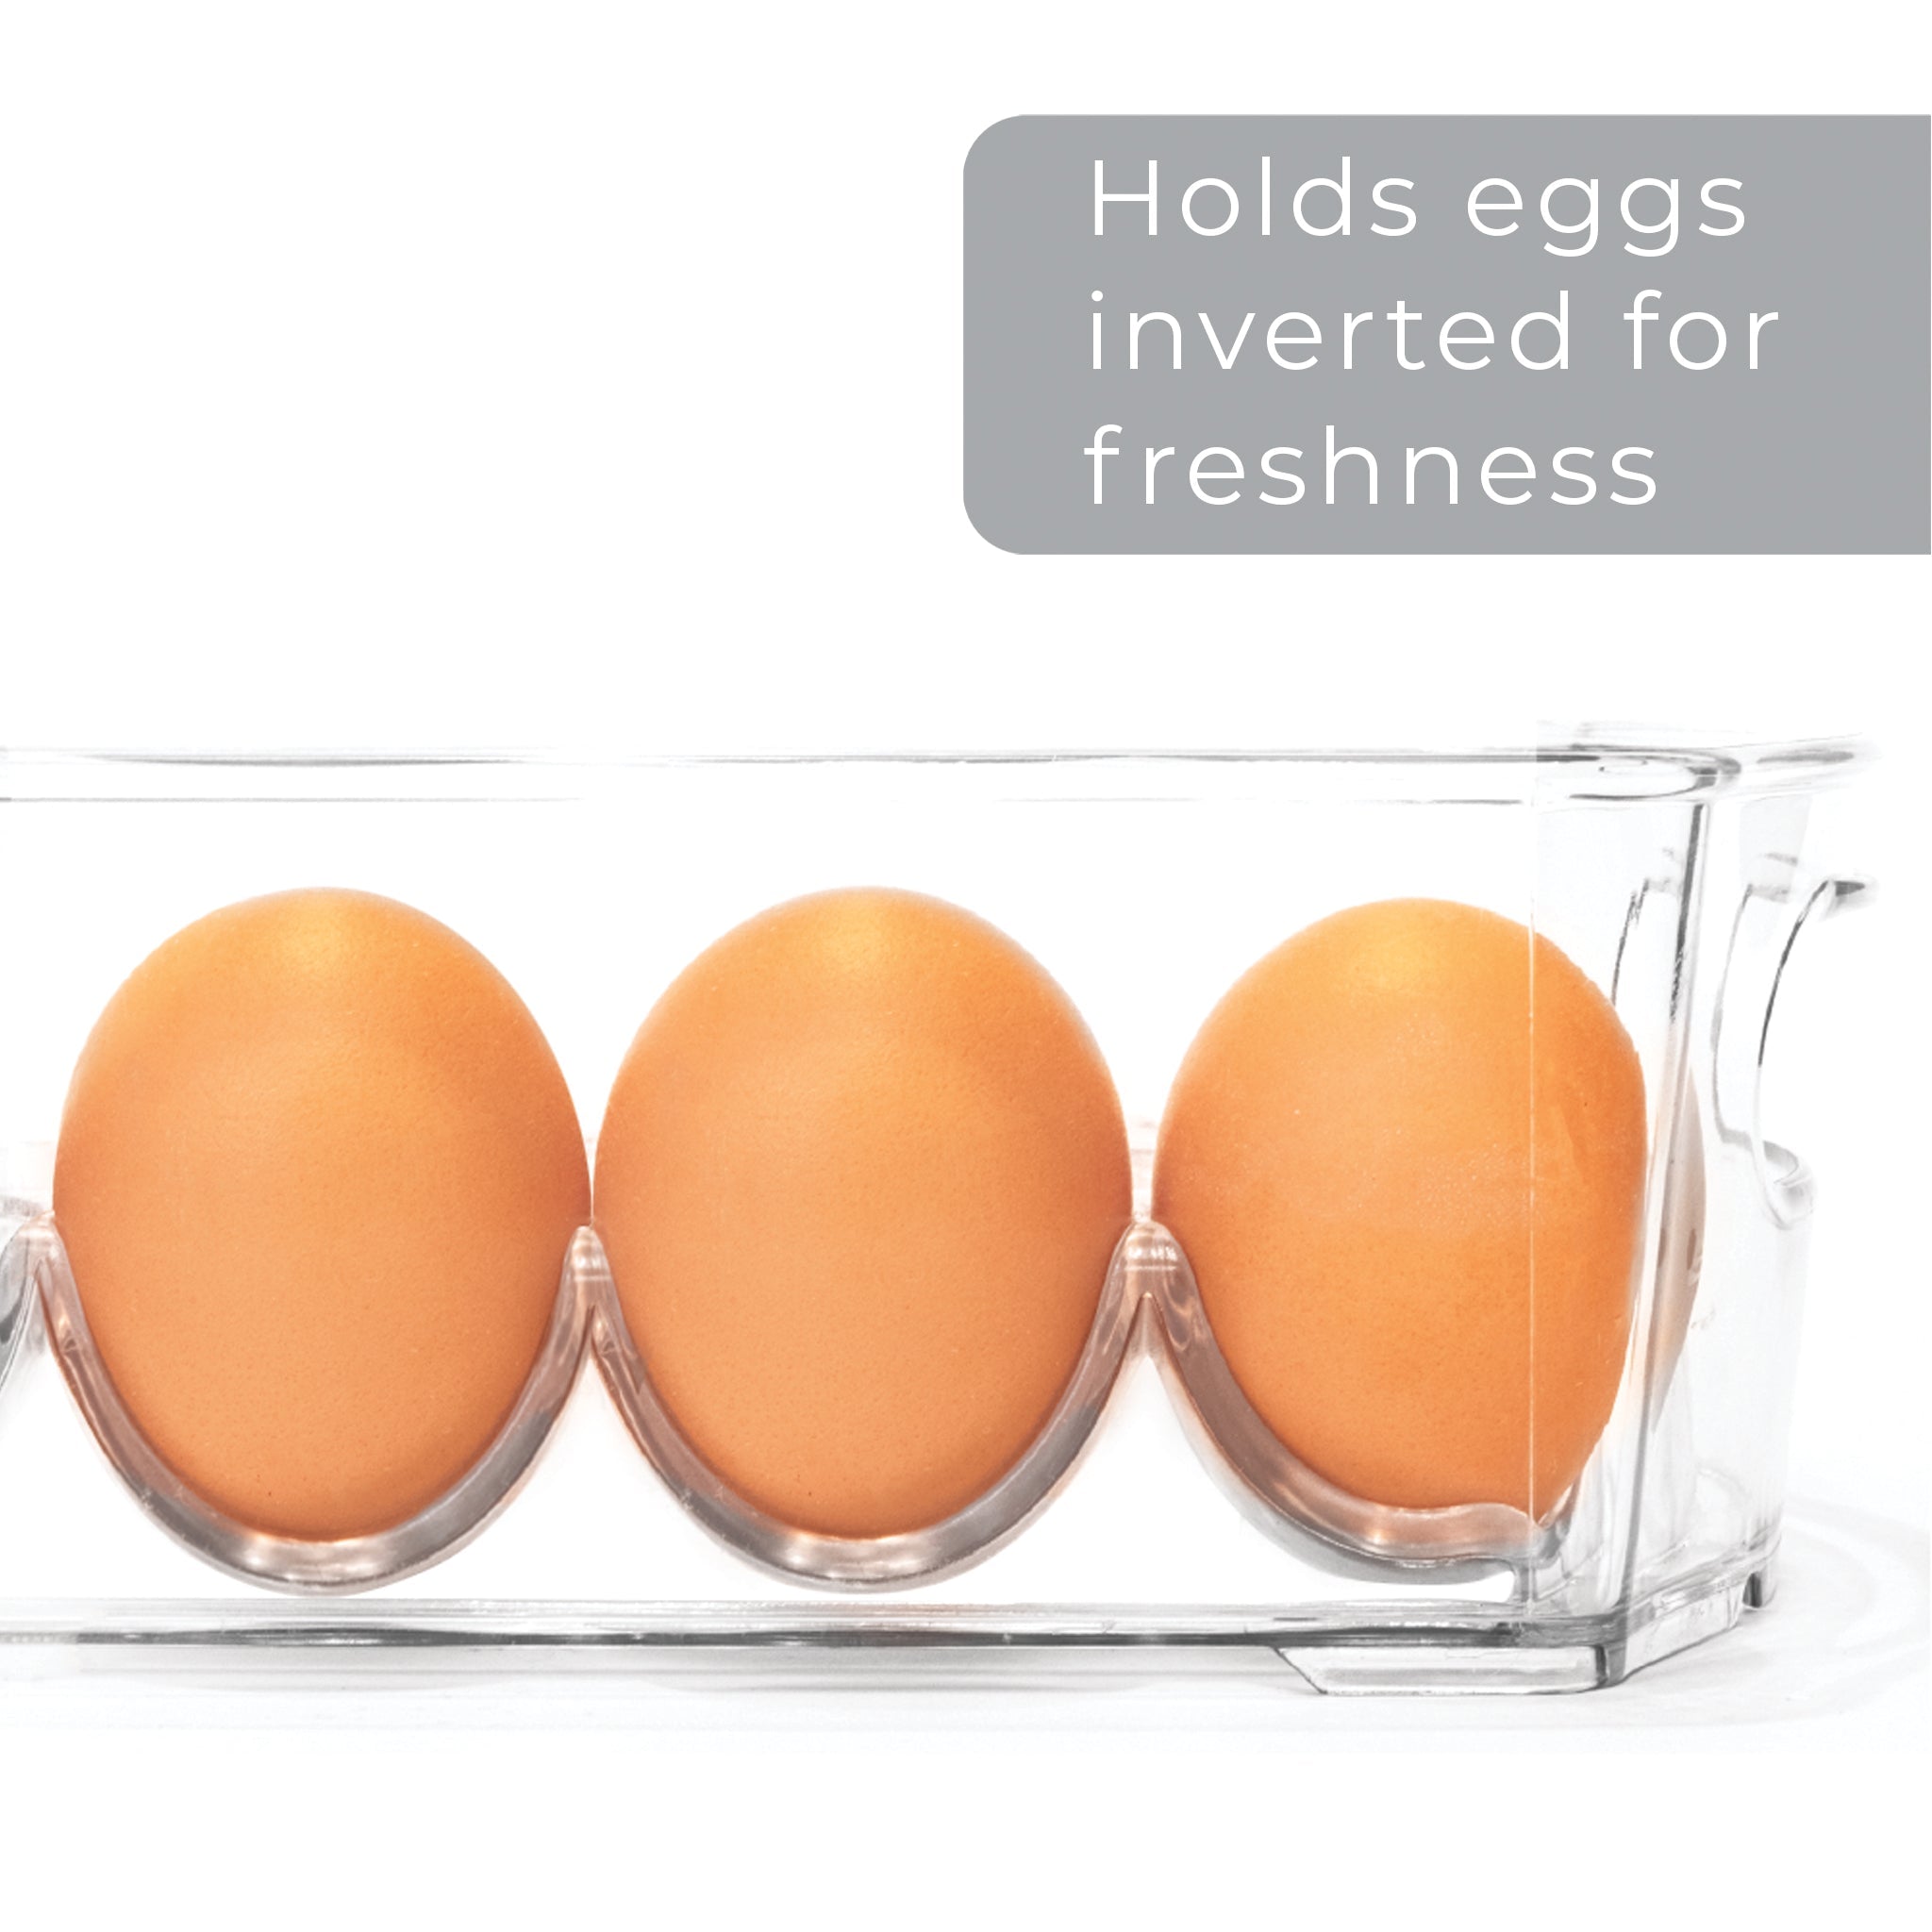 https://www.shopsmartdesign.com/cdn/shop/products/stackable-refrigerator-egg-storage-bin-with-handle-2-pack-smart-design-kitchen-8004291as2-incrementing-number-965673.jpg?v=1679335844